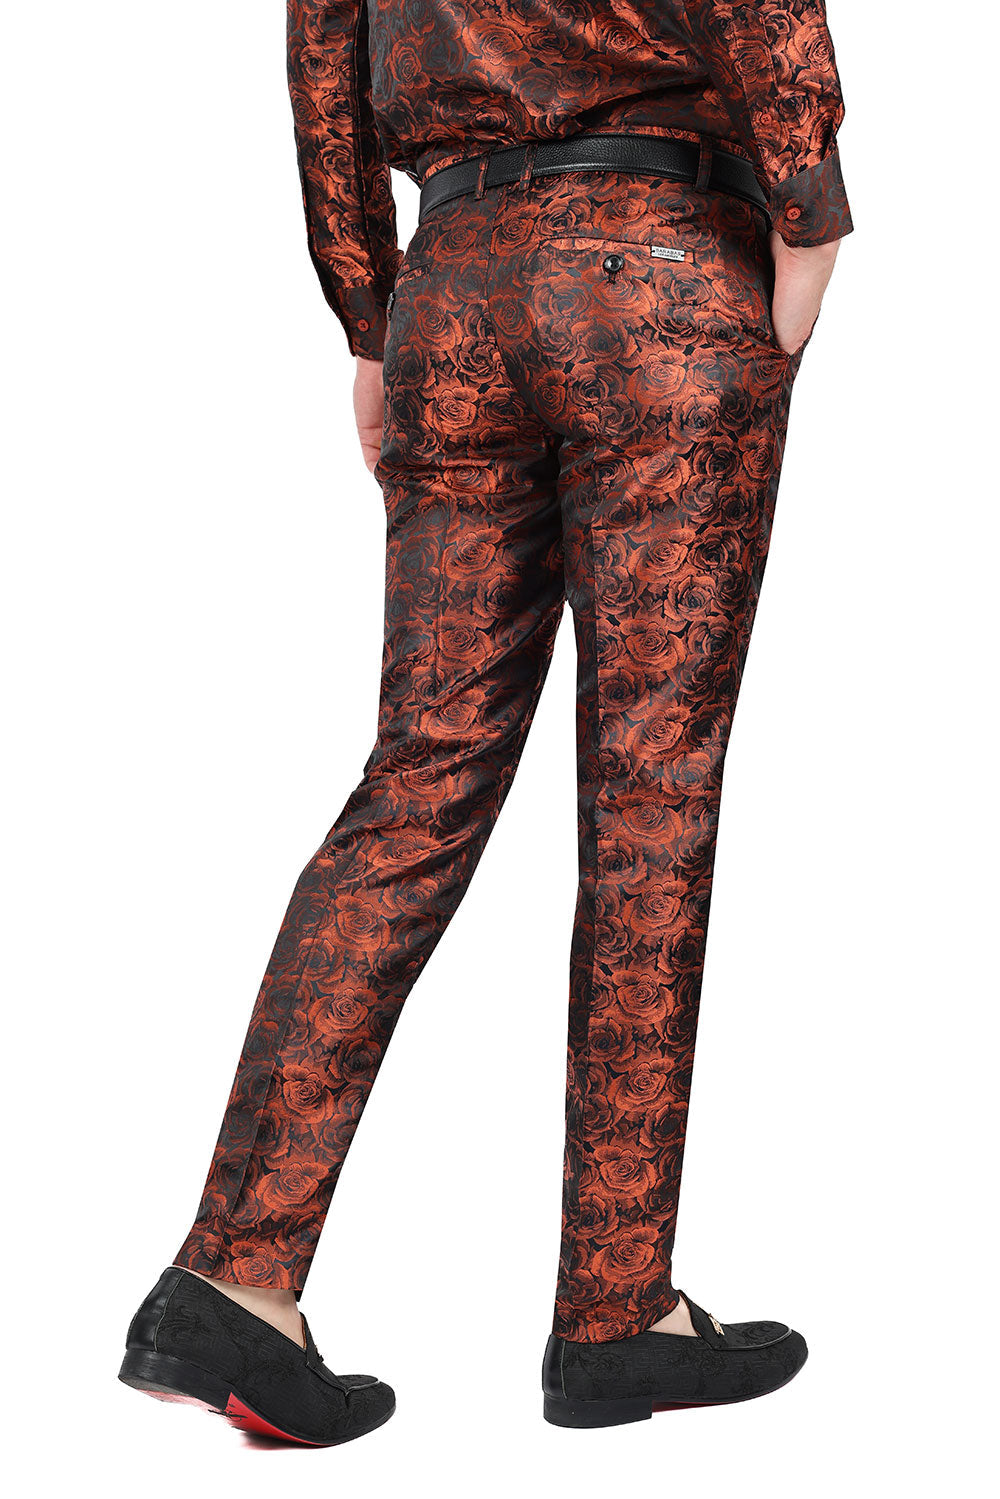 Barabas Men's Floral Rose Shiny Metallic Dress Pants 2CP03 Orange